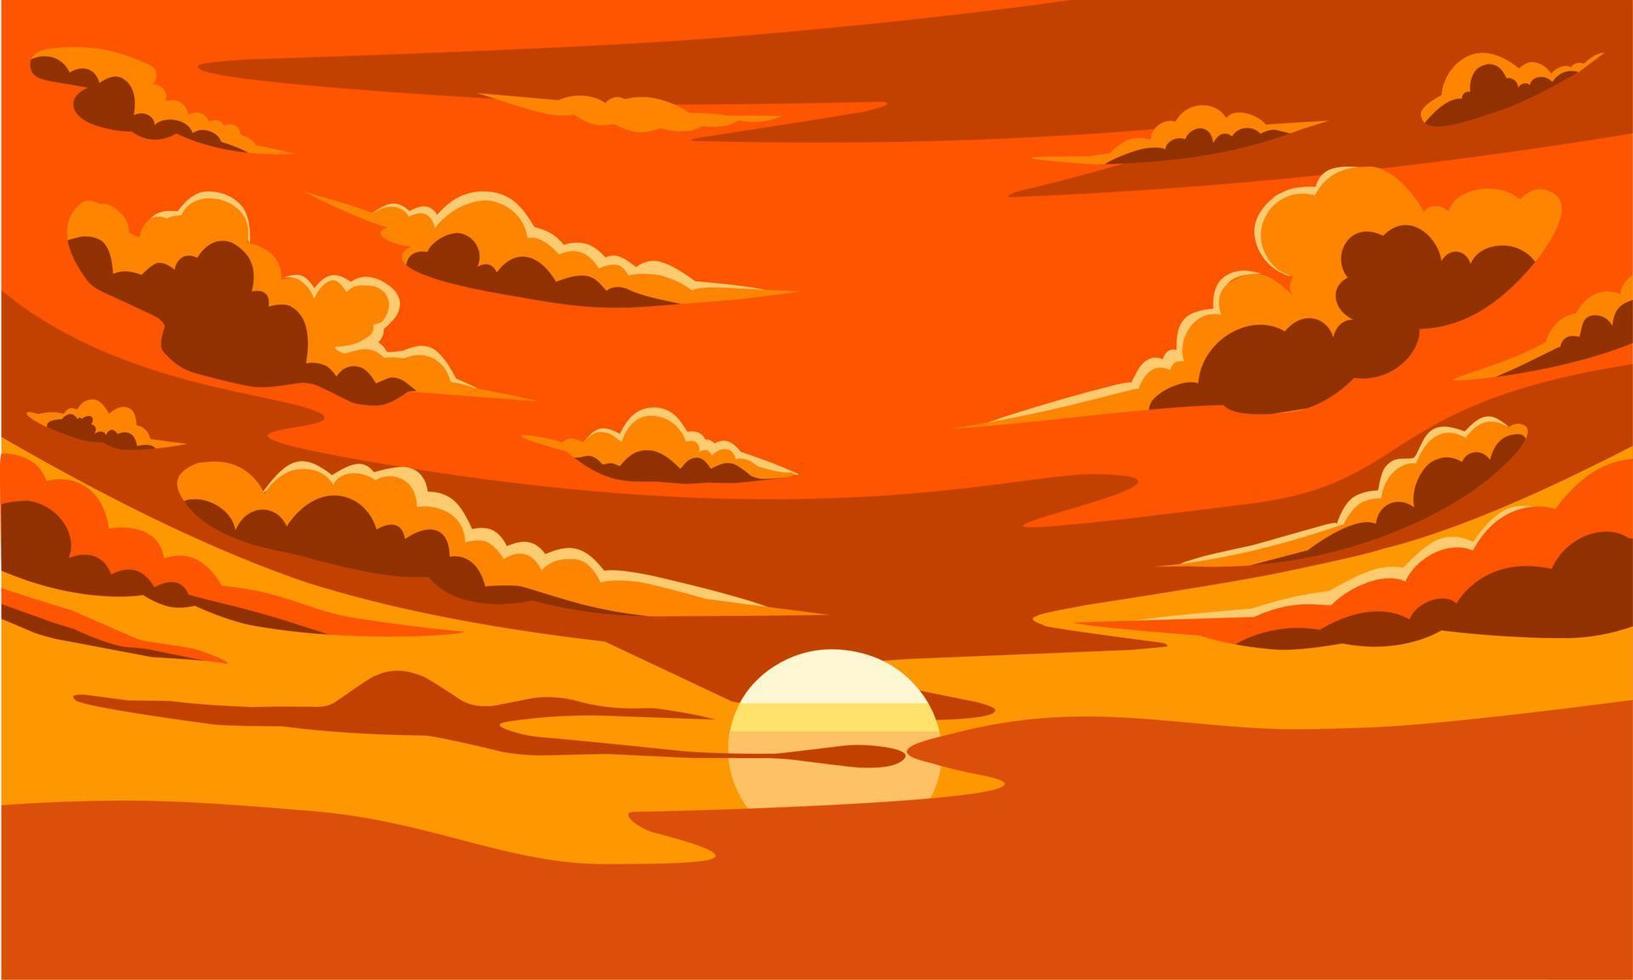 illustrazione vettoriale, tramonto con nuvole, come immagine di sfondo o modello. vettore